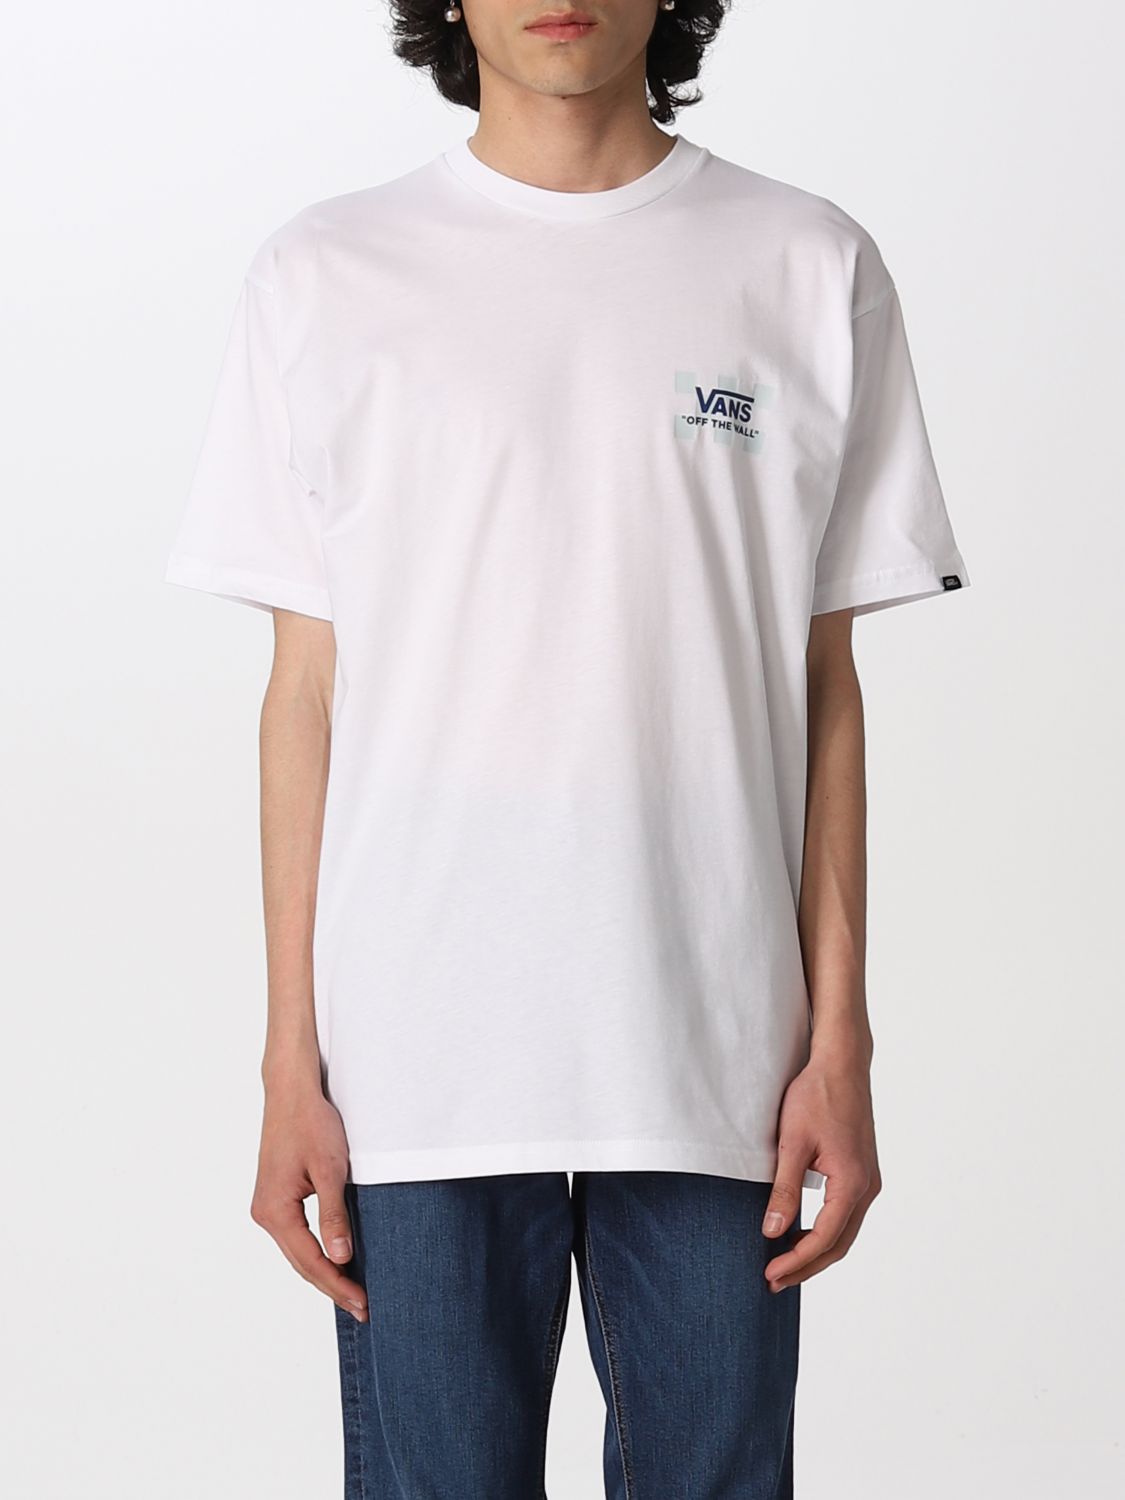 Vans Tシャツ メンズ ホワイト Giglio Comオンラインのvans Tシャツ Vn0a7ple